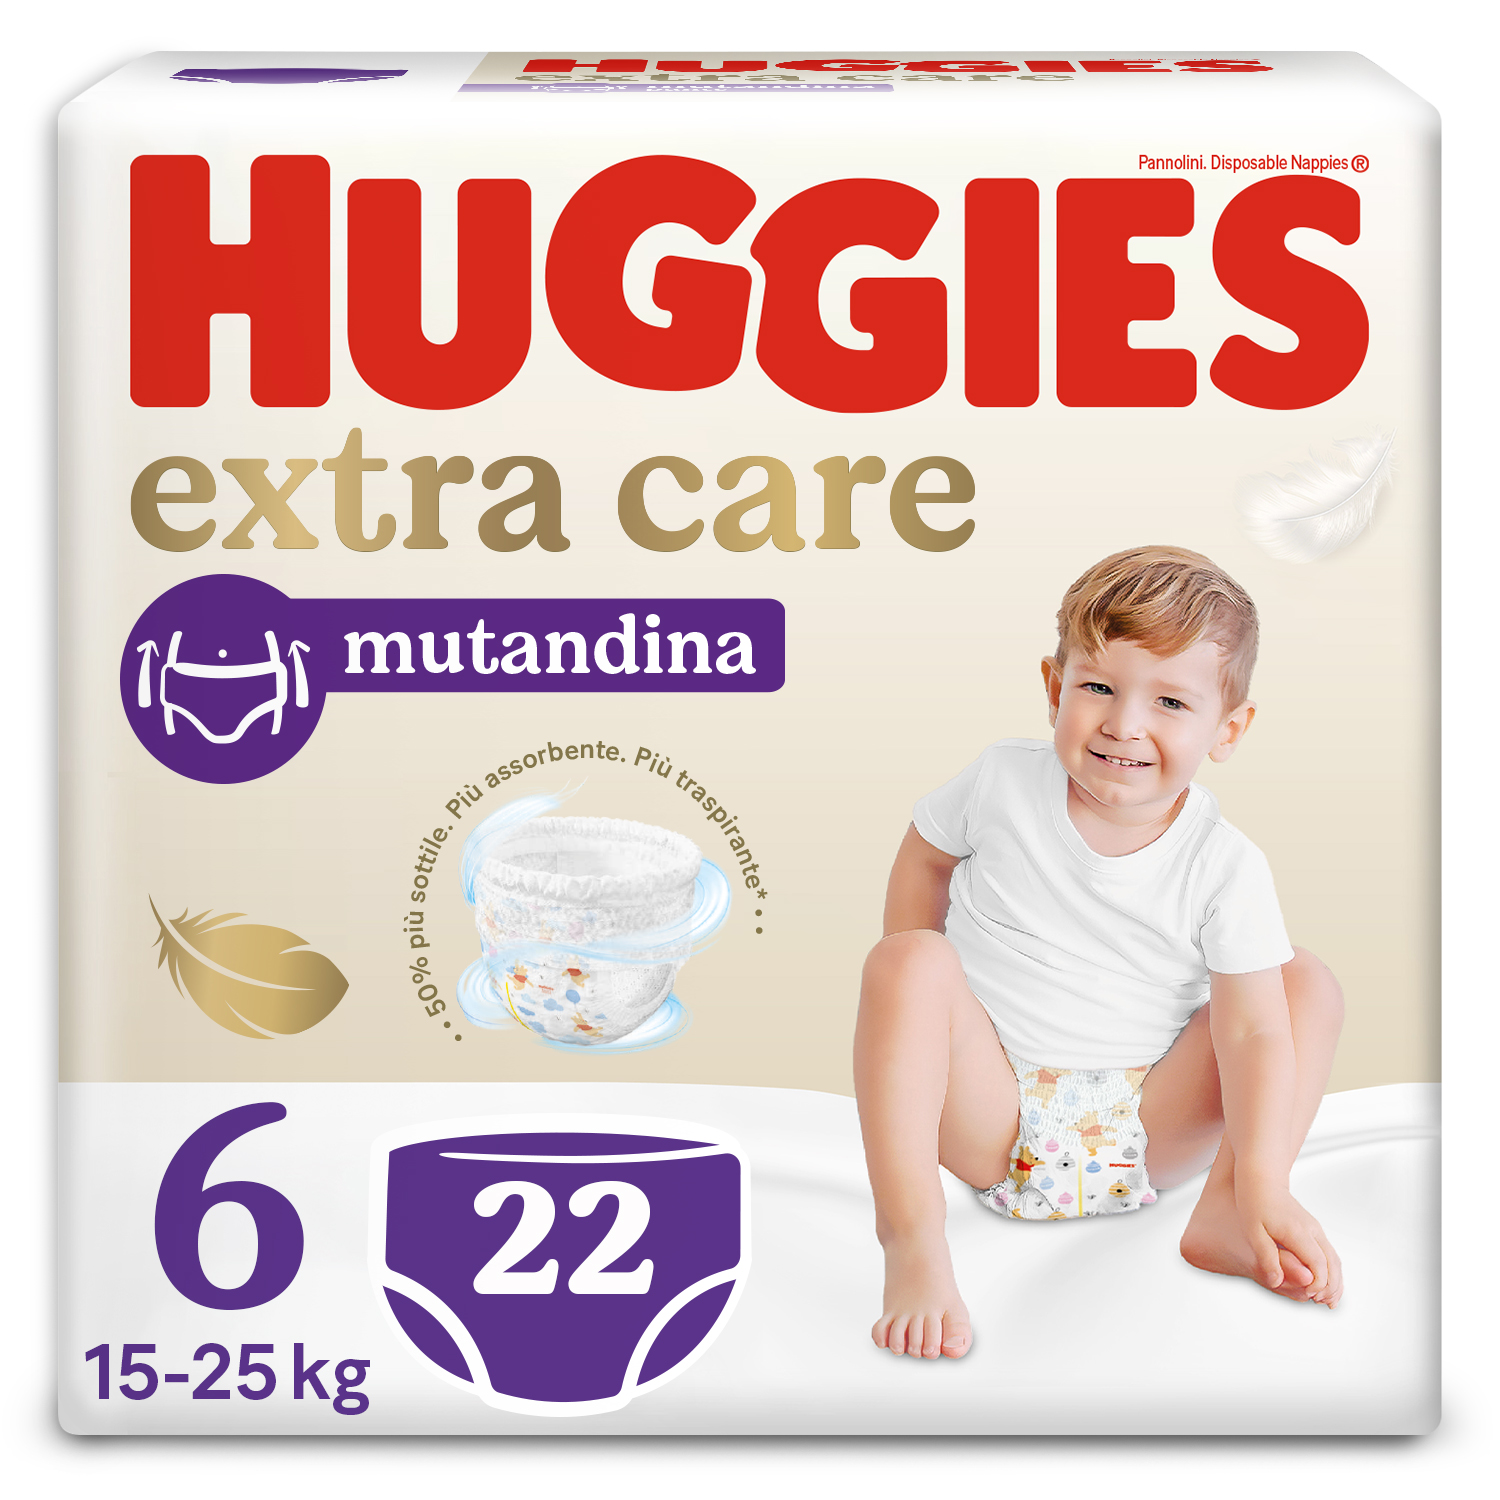 Extra care mutandina tg. 6 - Huggies